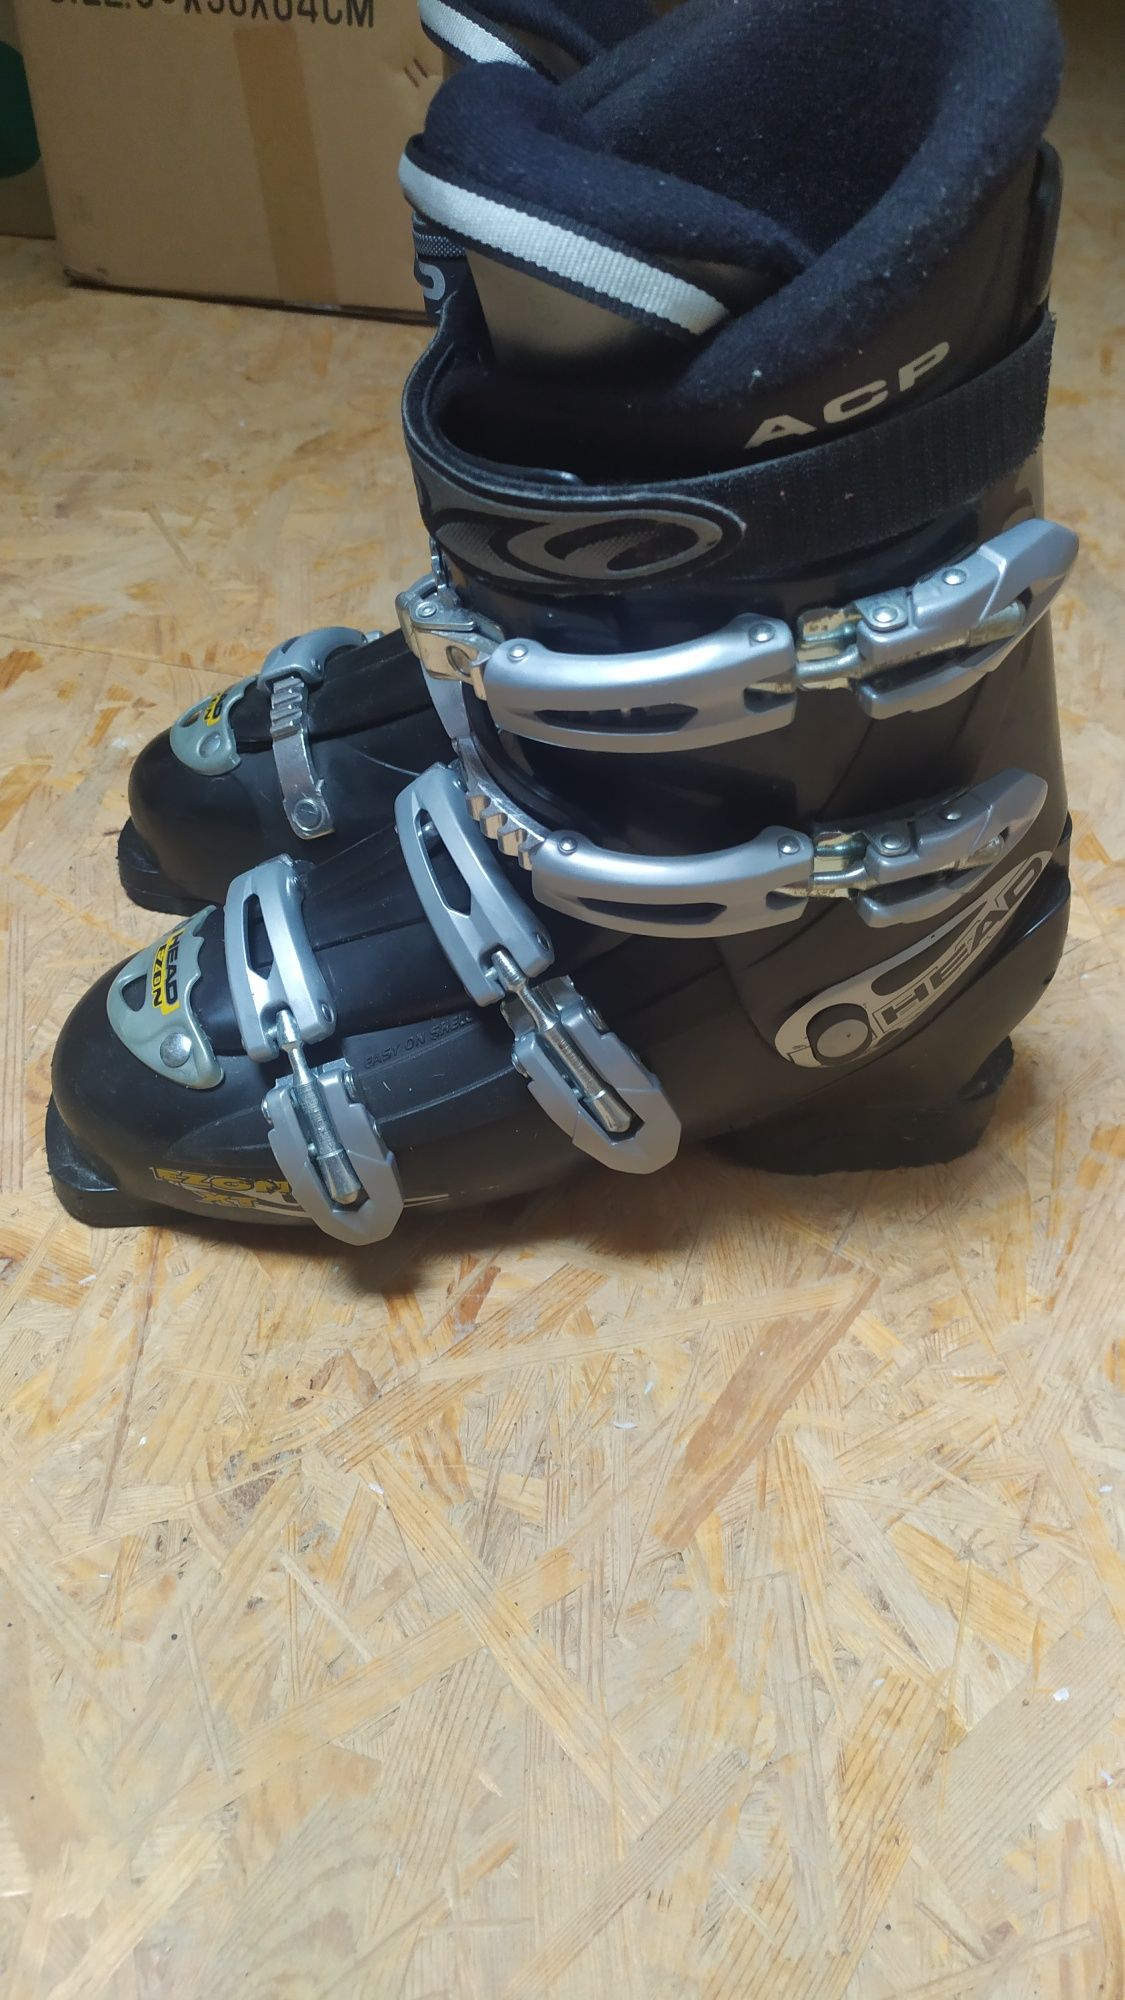 Buty narciarskie męskie Head Ezon rozm. 42 dł. 28,0-28,5 cm